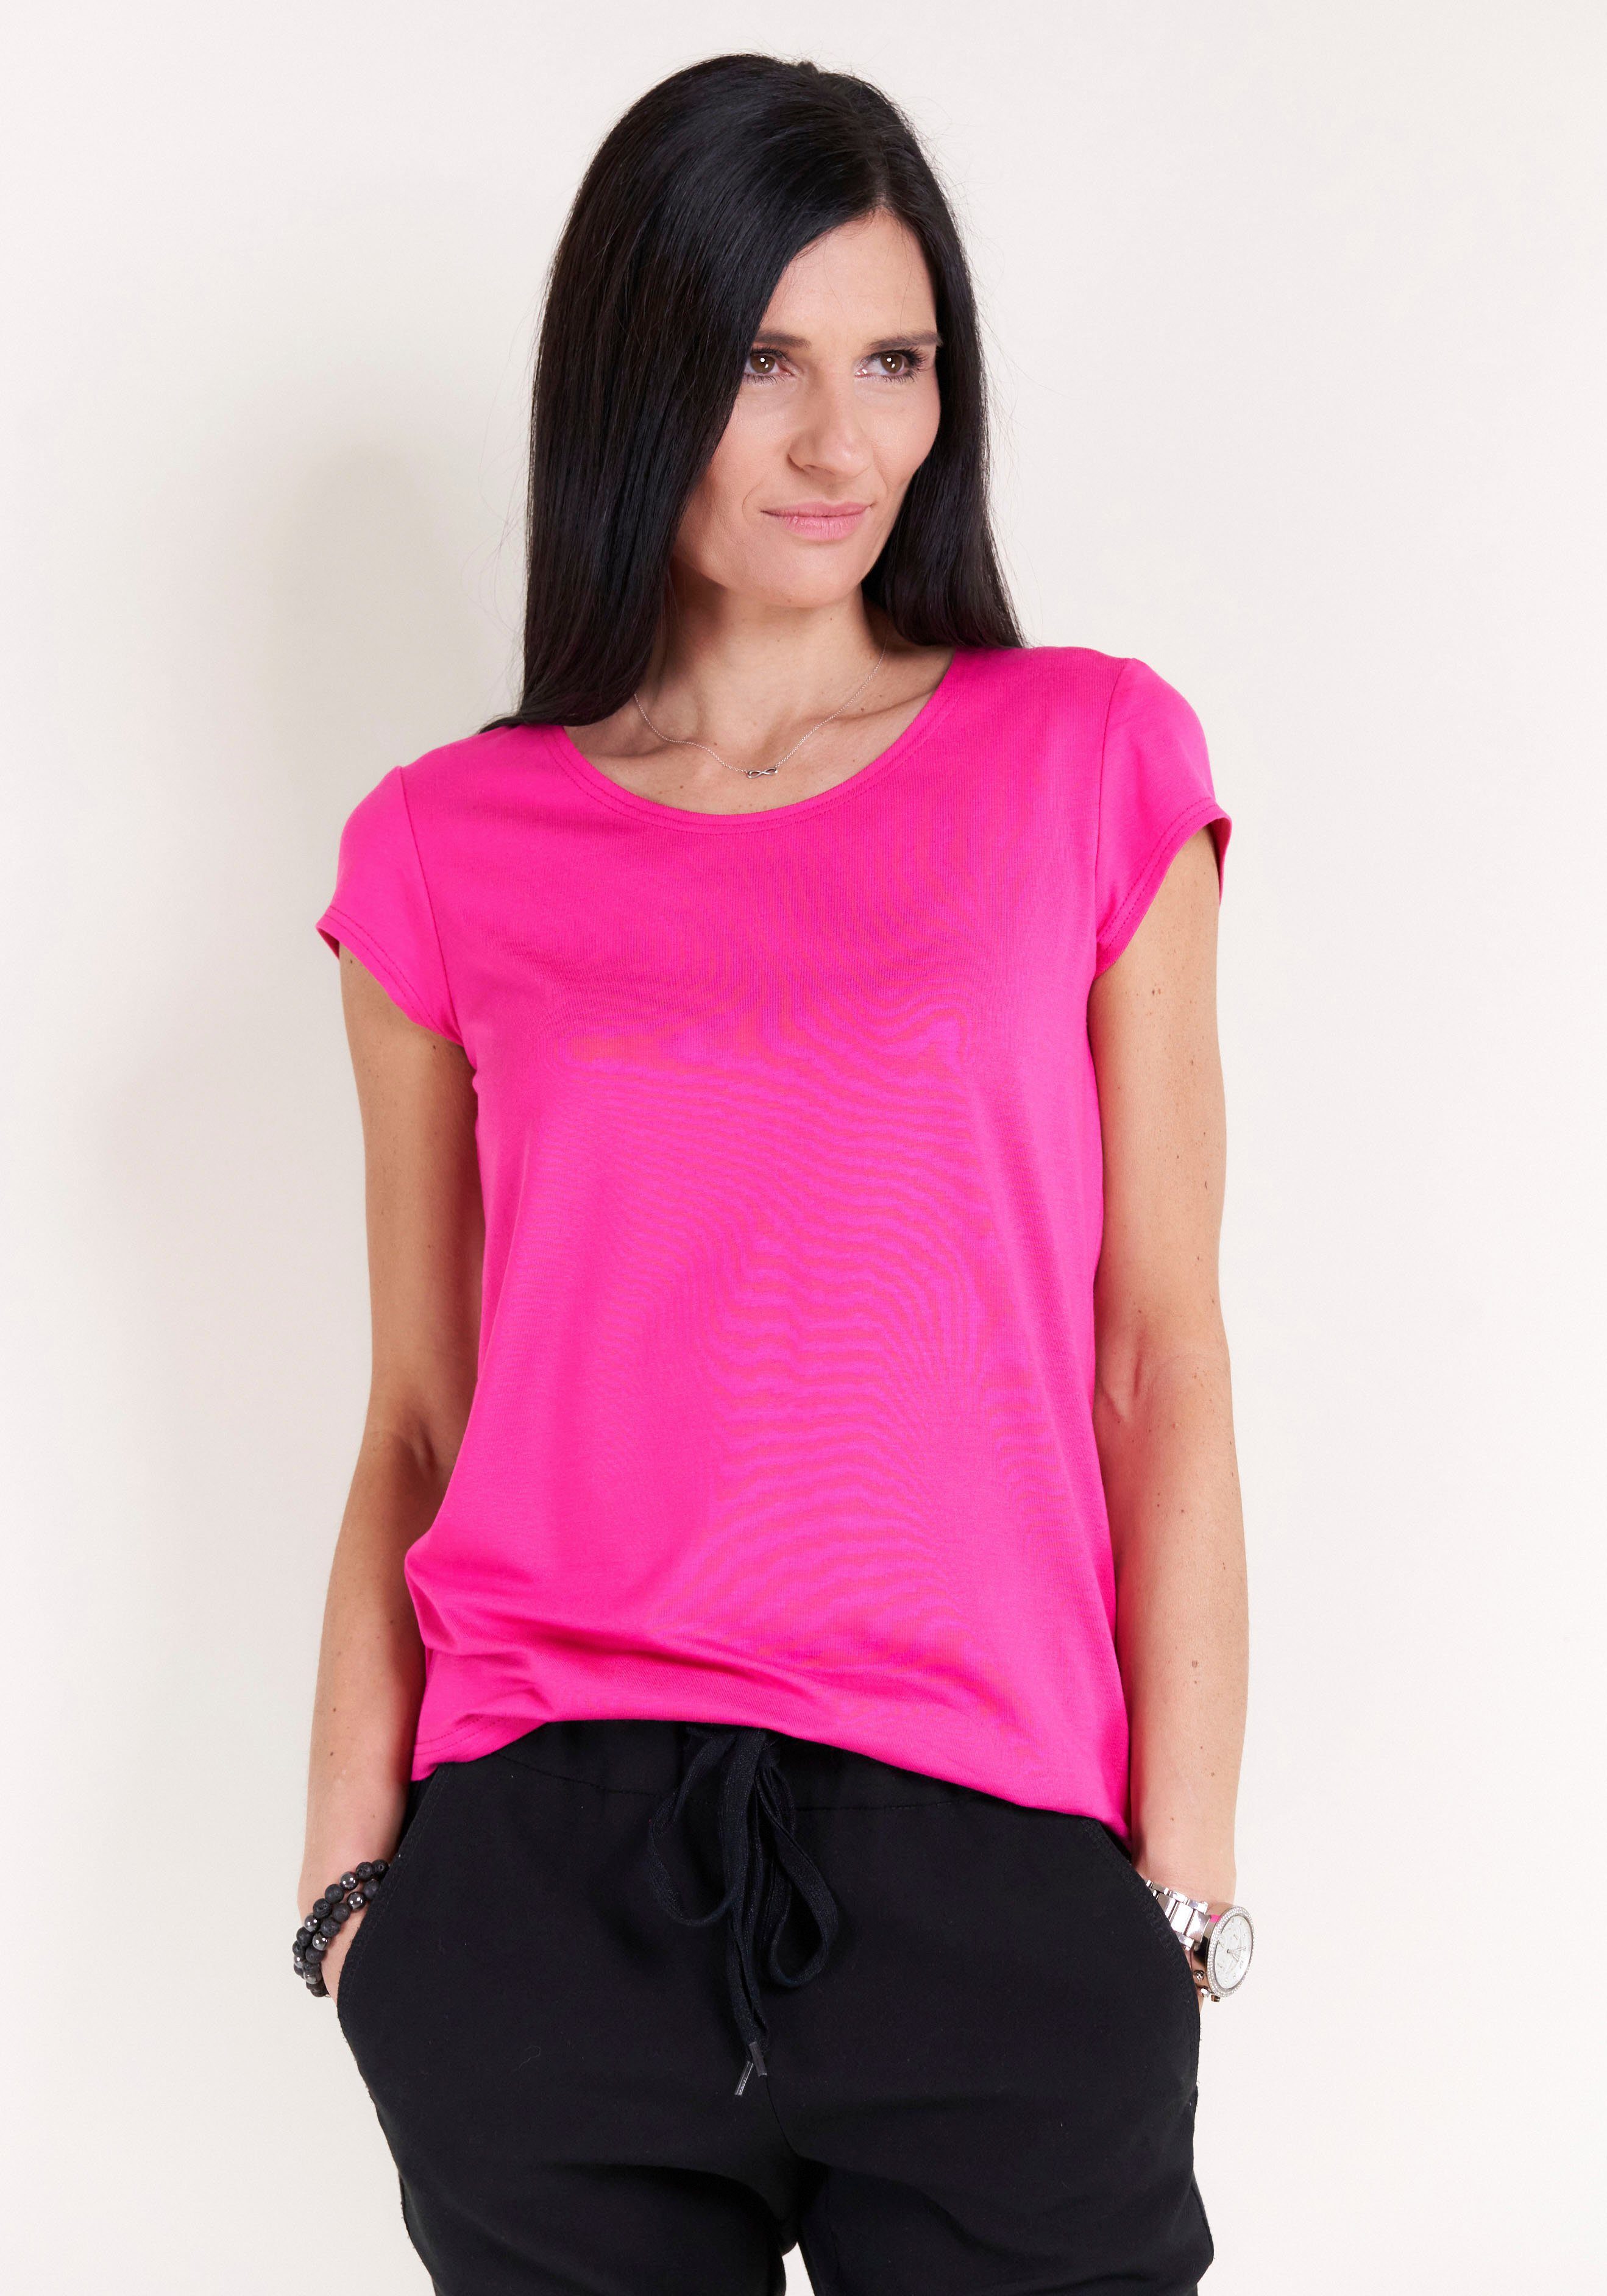 Kappenärmel, Moden T-Shirt mit IN Seidel GERMANY MADE pink Seidel Moden